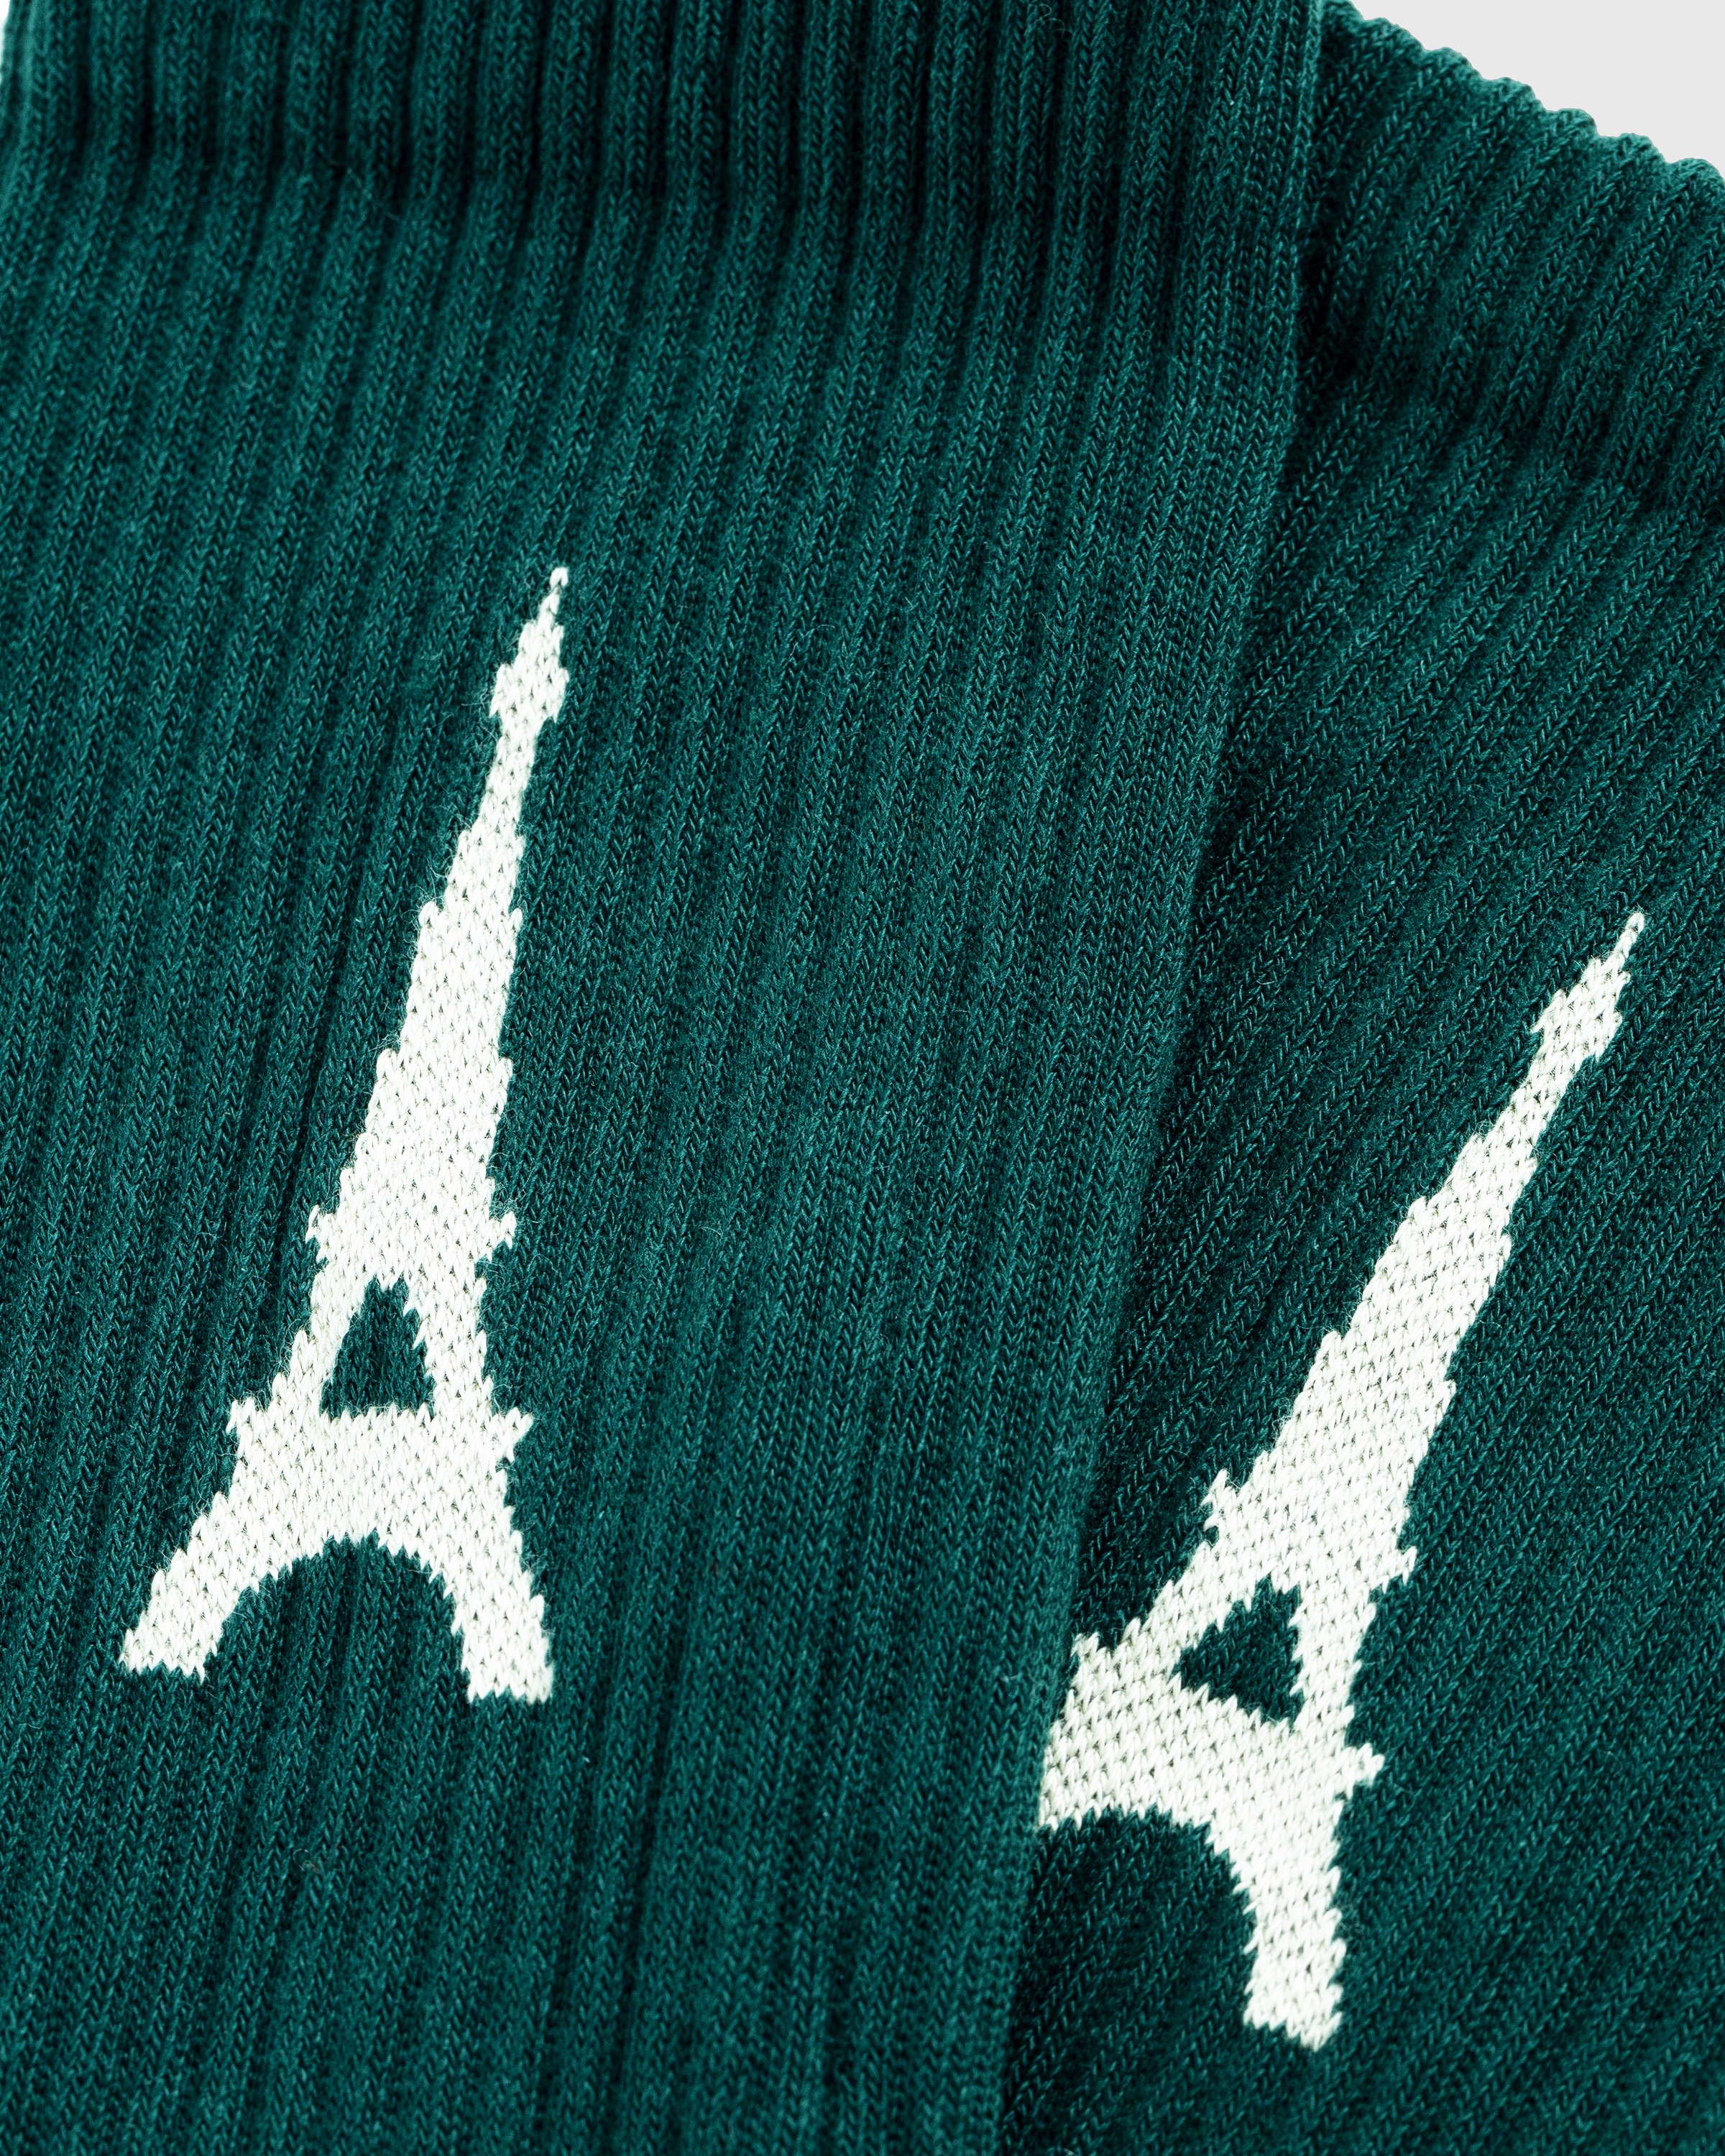 Highsnobiety - Not In Paris 4 Eiffel Tower Socks Dark Green - Accessories - Green - Image 4